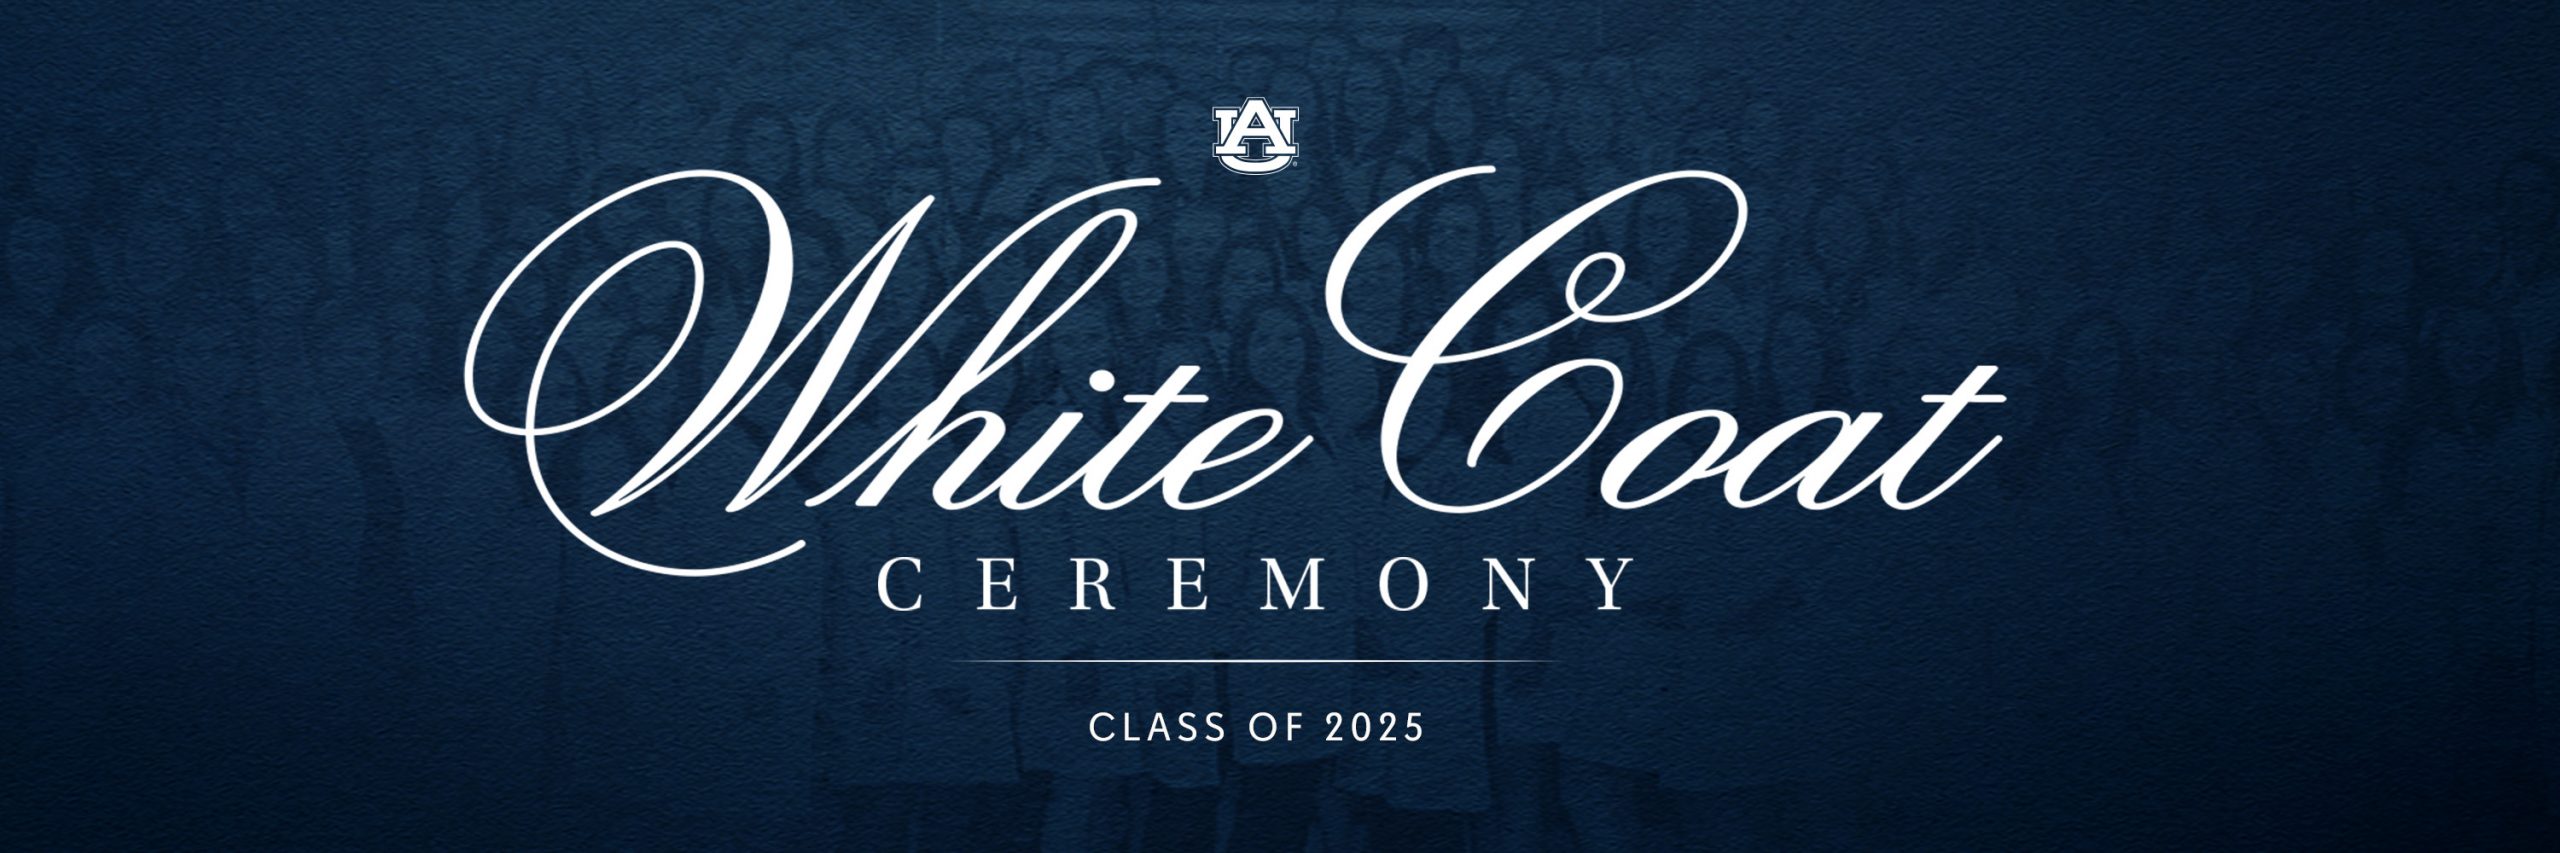 White Coat Ceremony Class of 2024